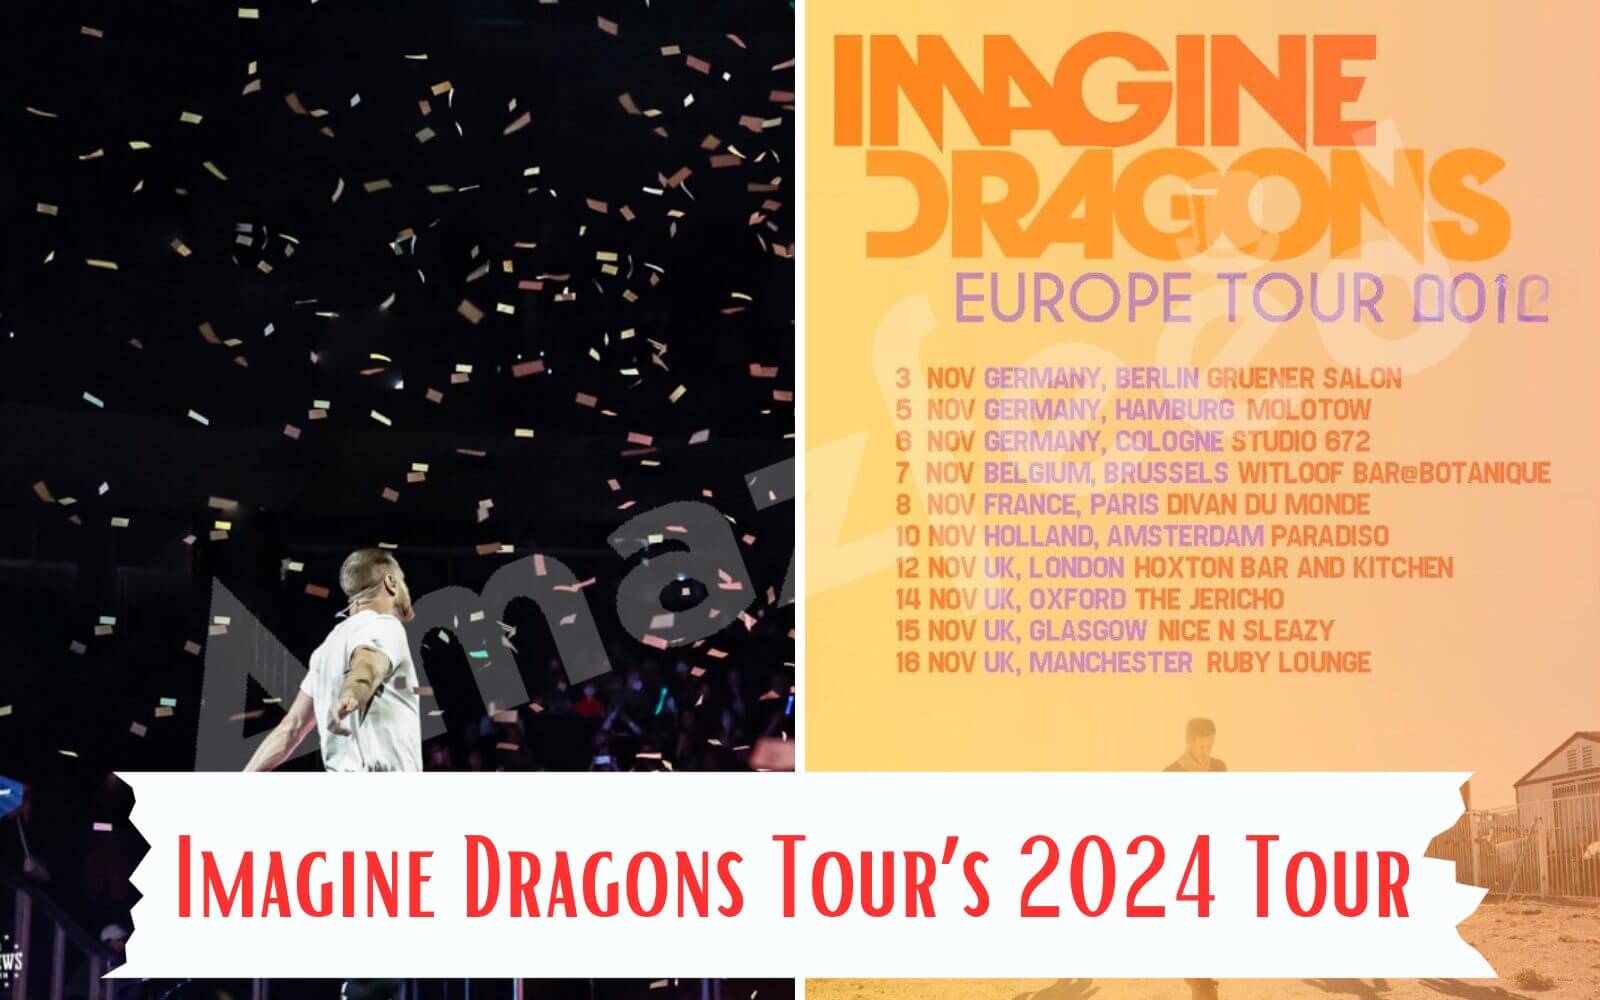 Imagine Dragons Tour’s 2024 tour